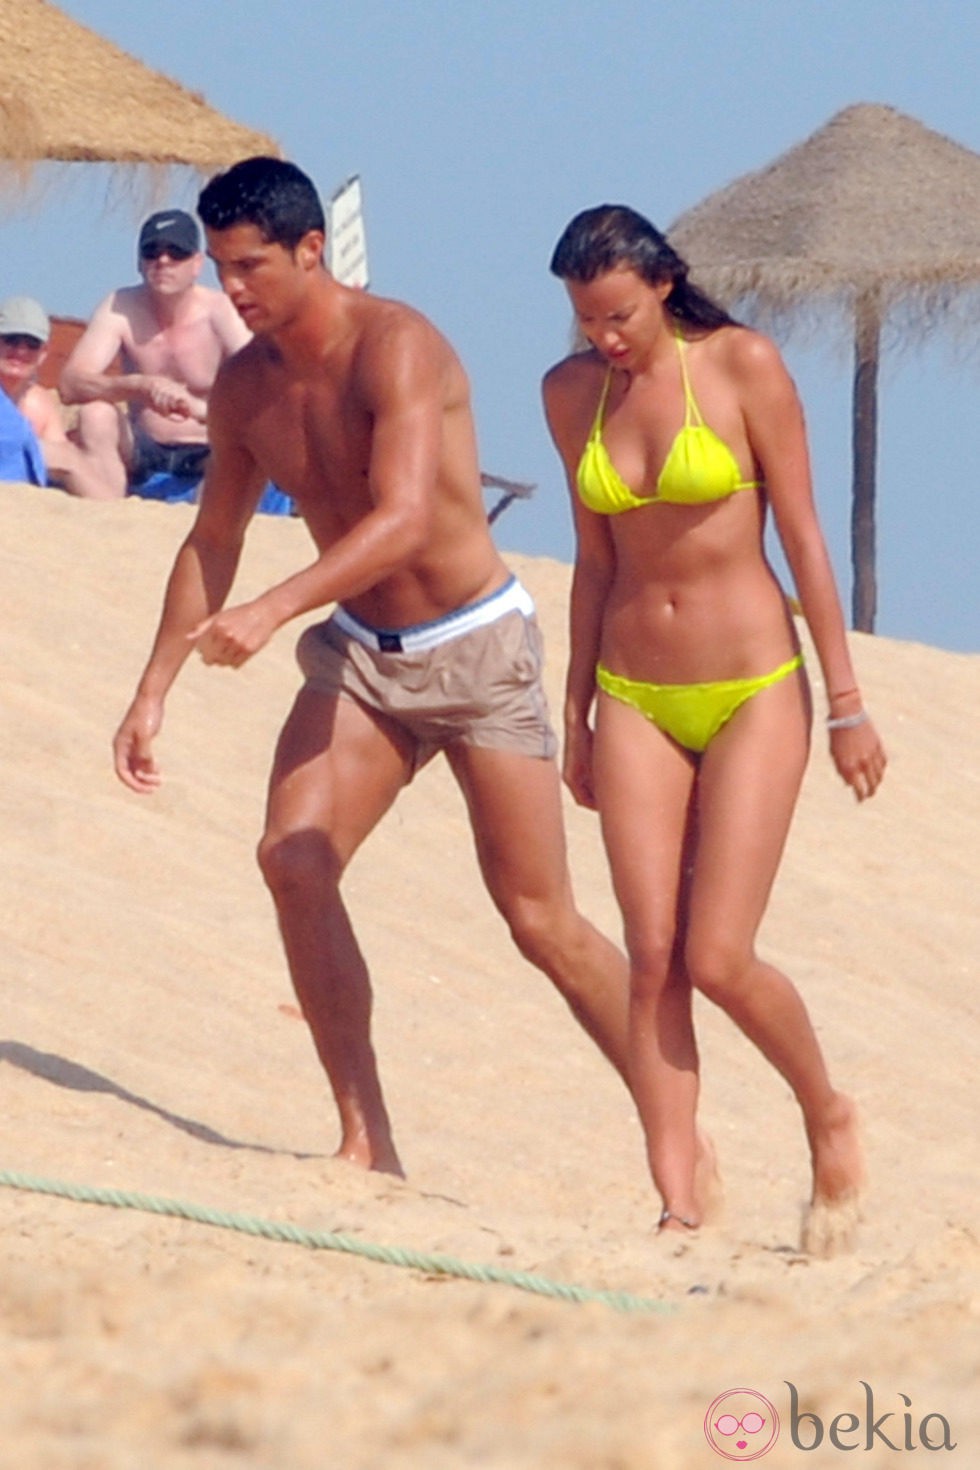 Cristiano Ronaldo con el torso desnudo e Irina Shayk en bikini durante sus vacaciones